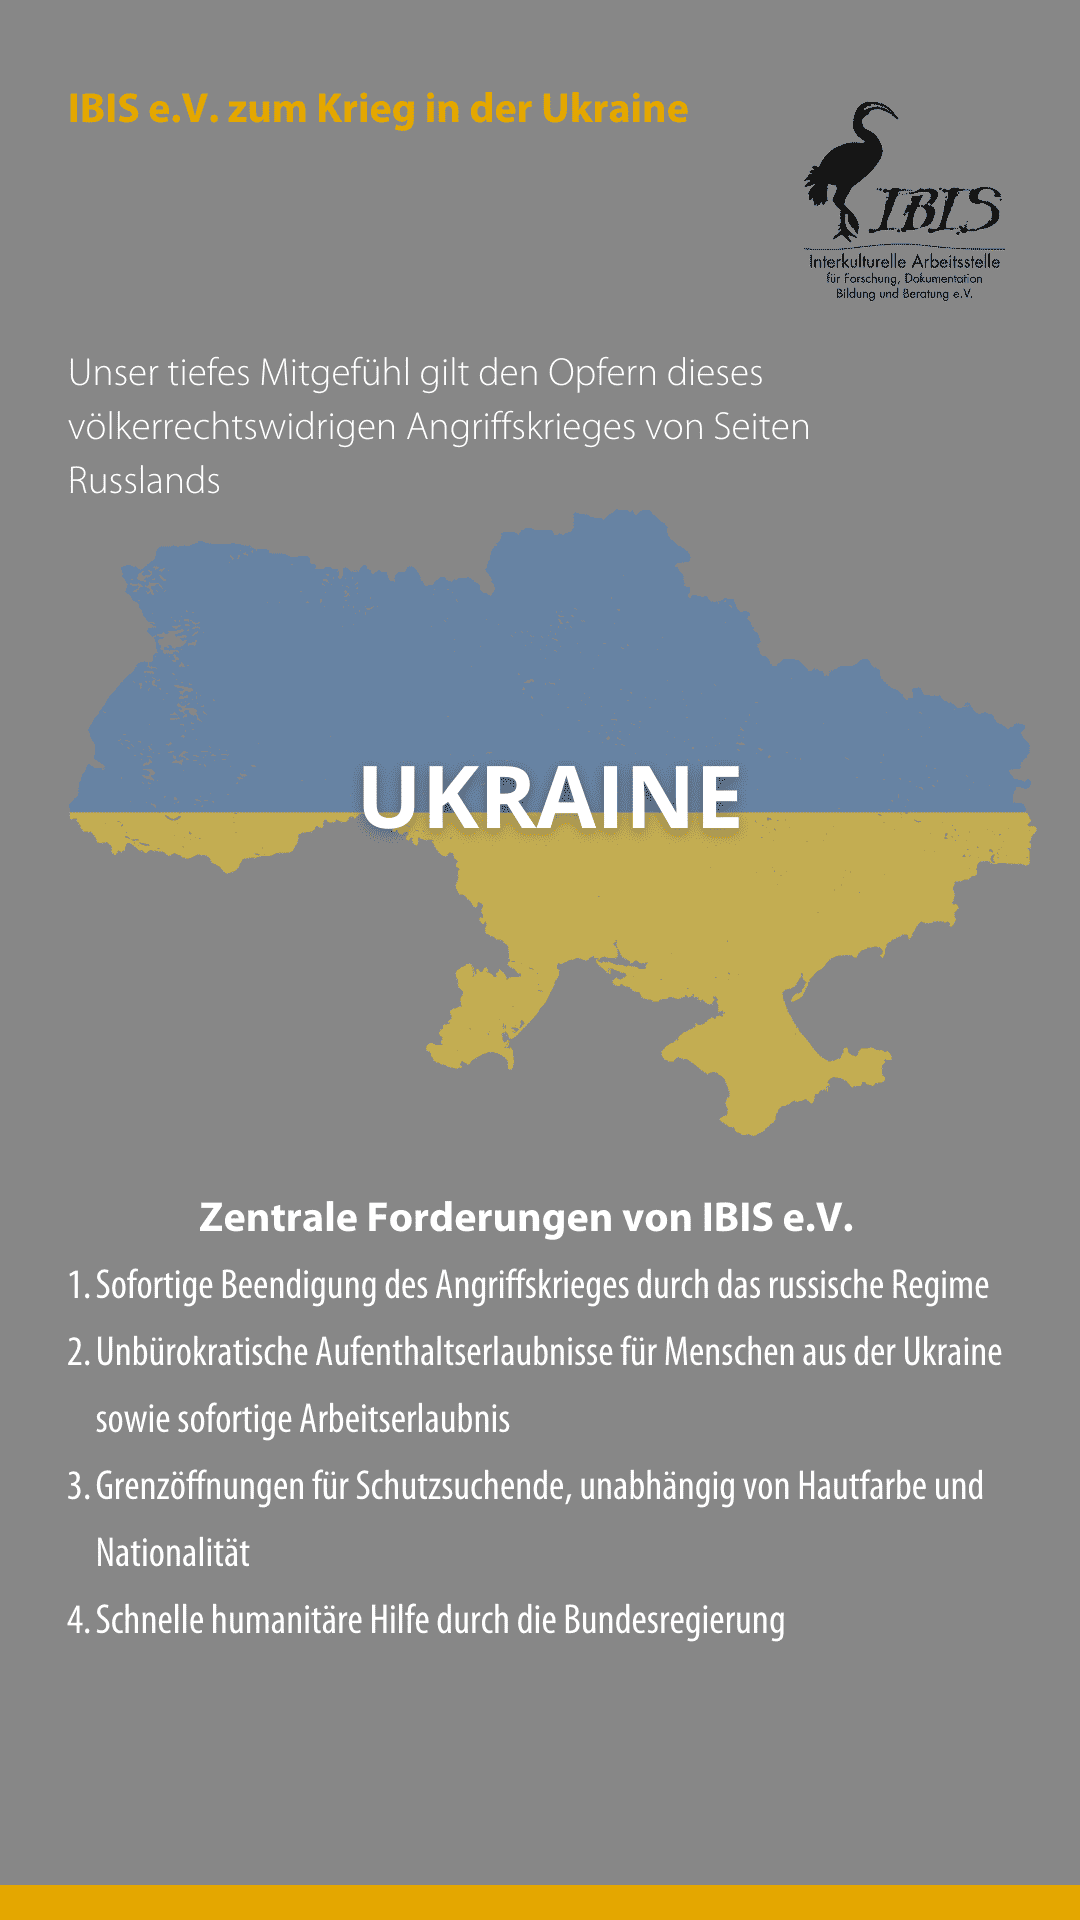 IBIS e.V. zum Krieg in der Ukraine